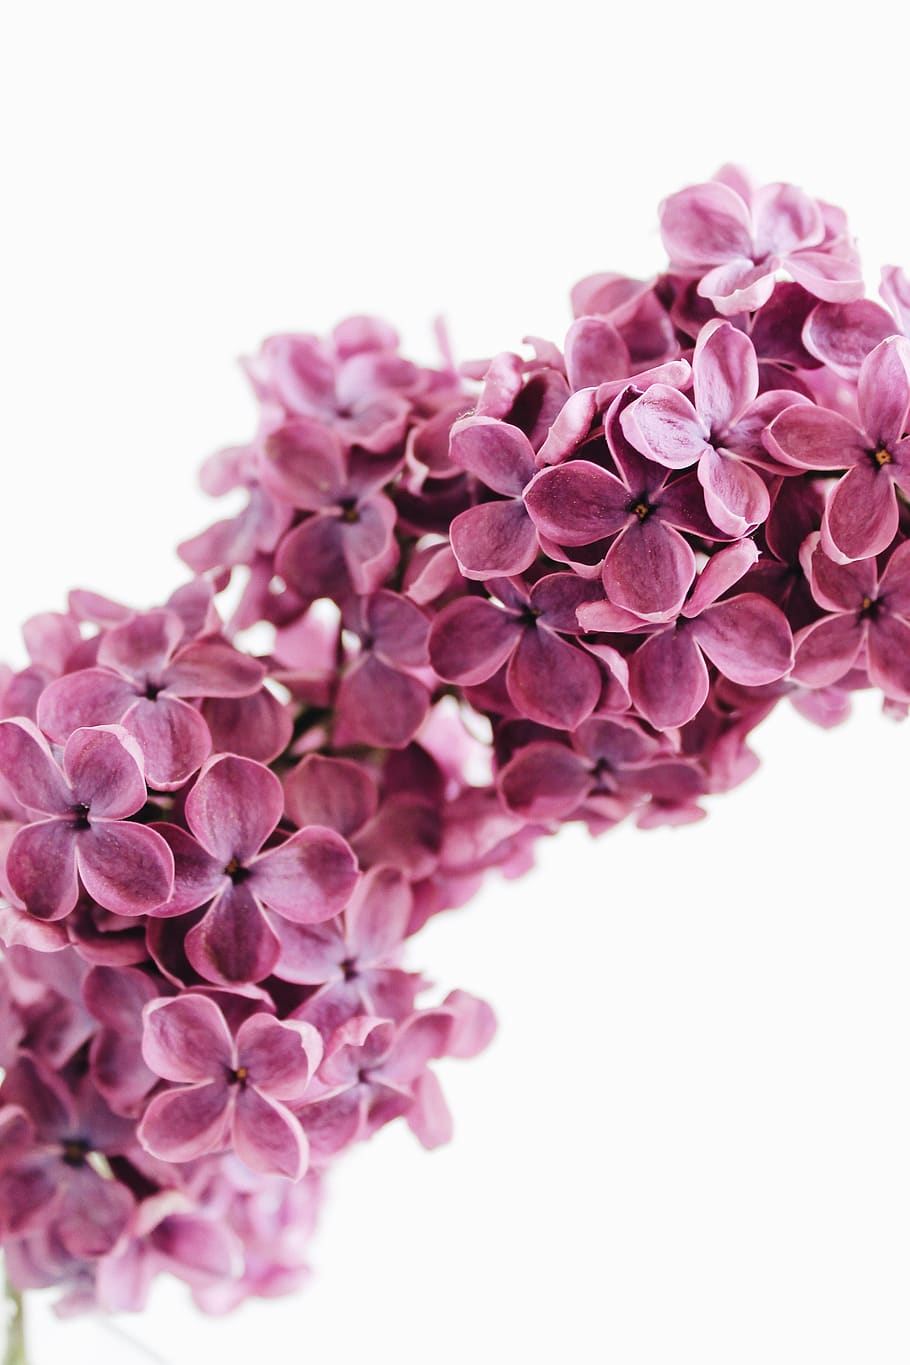 ungu, berwarna merah muda, Mei, bunga-bunga, musim semi, alam, Flora, menanam, taman, bunga lilac